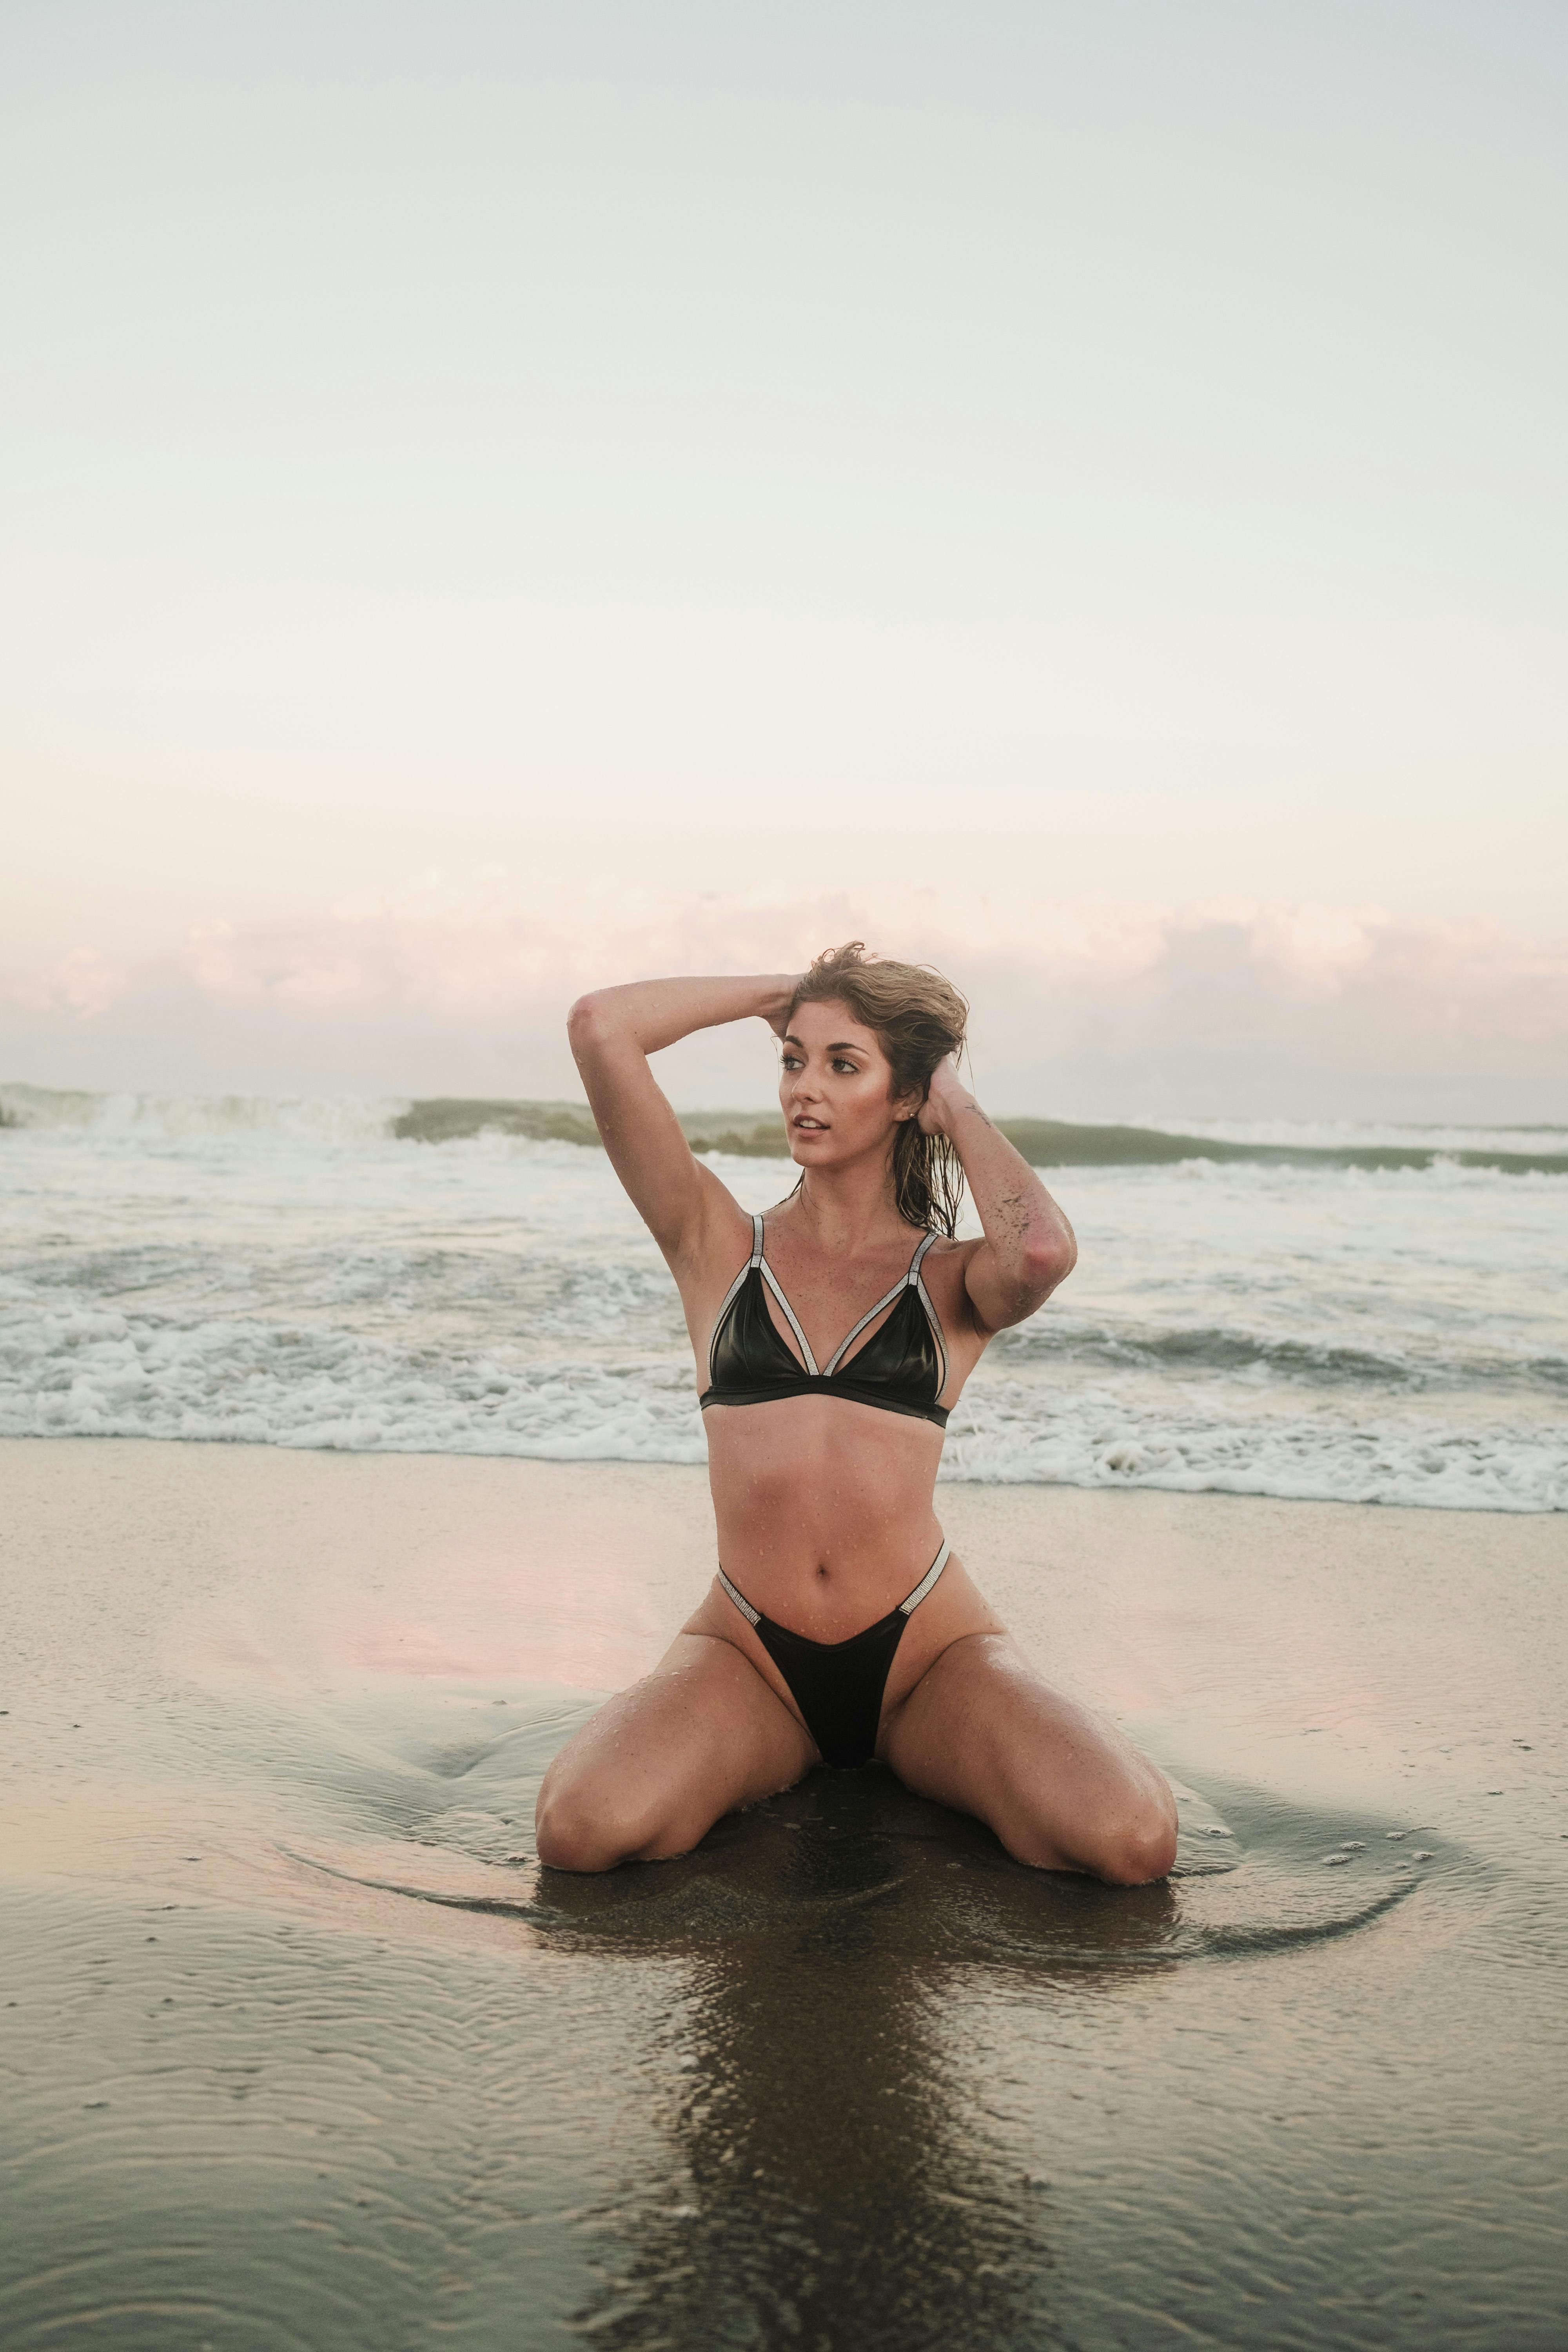 free photo of woman wearing bikini posing on beach